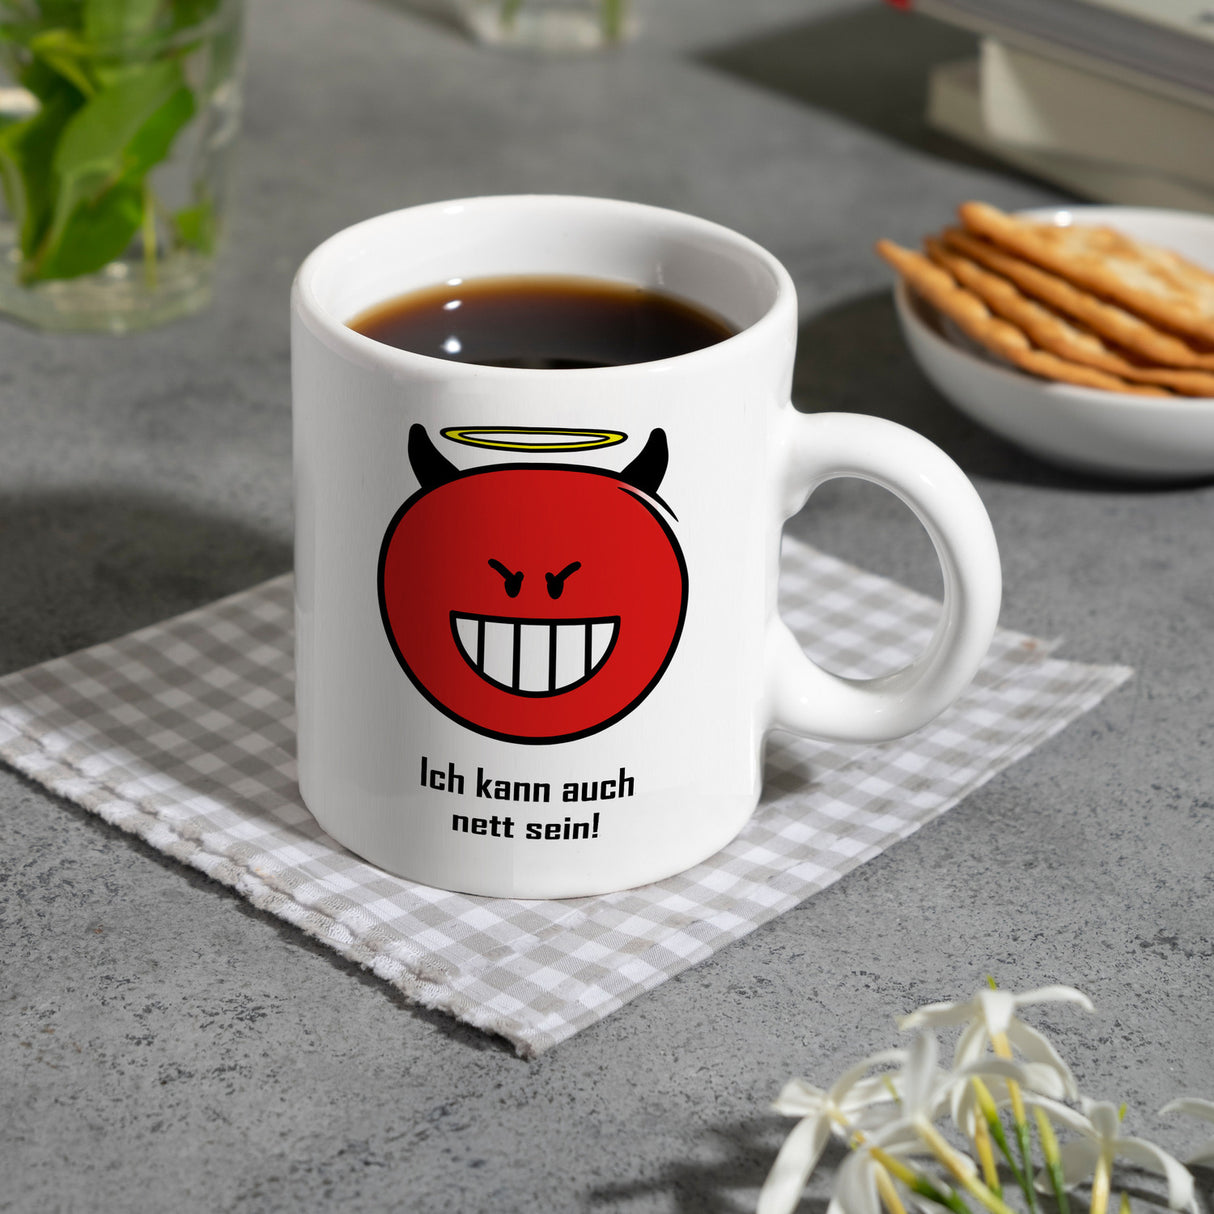 Kaffeebecher mit Spruch: Ich kann auch nett sein!